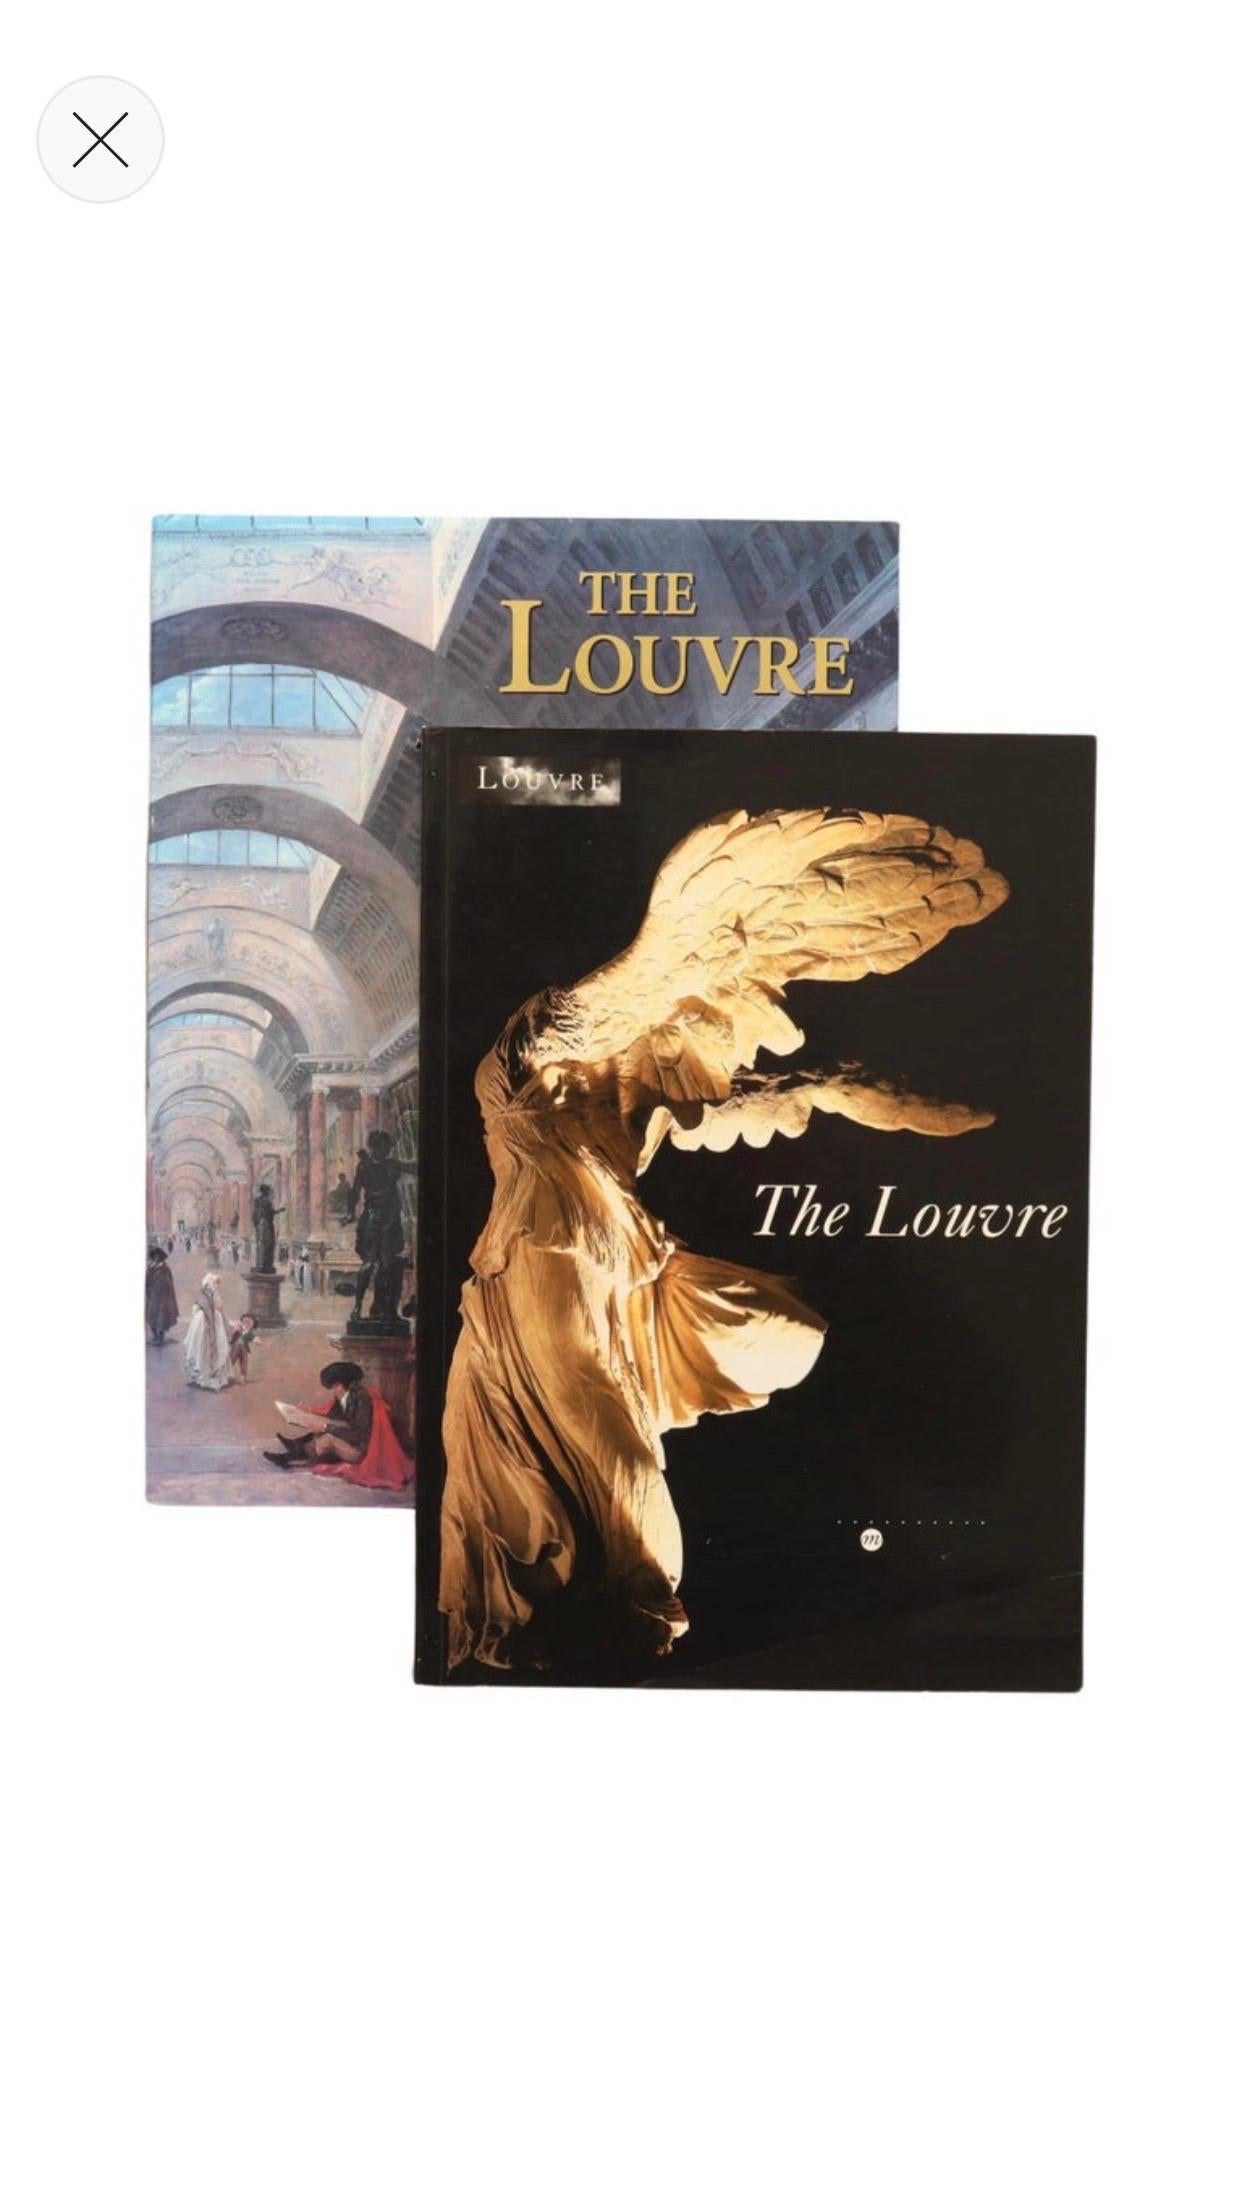 Ein Satz von zwei Büchern über den Louvre. Ein gebundenes Buch mit Schutzumschlag, veröffentlicht von Barnes and Noble im Jahr 2003, 320 Seiten. Ein Softcover-Buch, veröffentlicht 1996 von Reunion des Musees Nationaux im Jahr 1996, 406 Seiten.